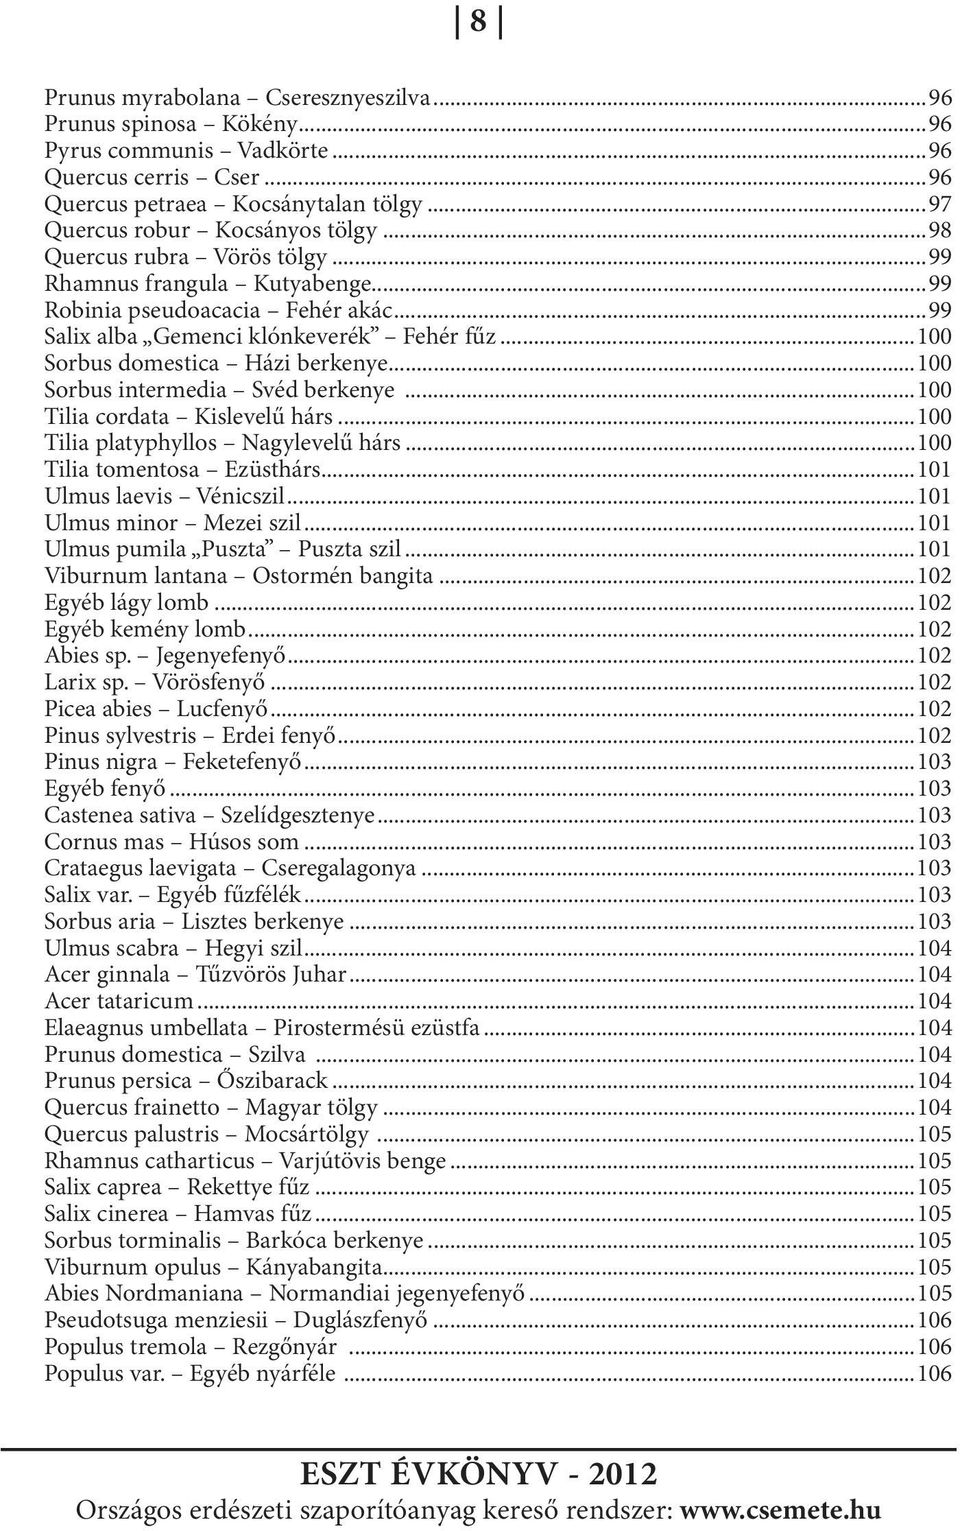 ..100 Sorbus intermedia Svéd berkenye...100 Tilia cordata Kislevelű hárs...100 Tilia platyphyllos Nagylevelű hárs...100 Tilia tomentosa Ezüsthárs...101 Ulmus laevis Vénicszil.